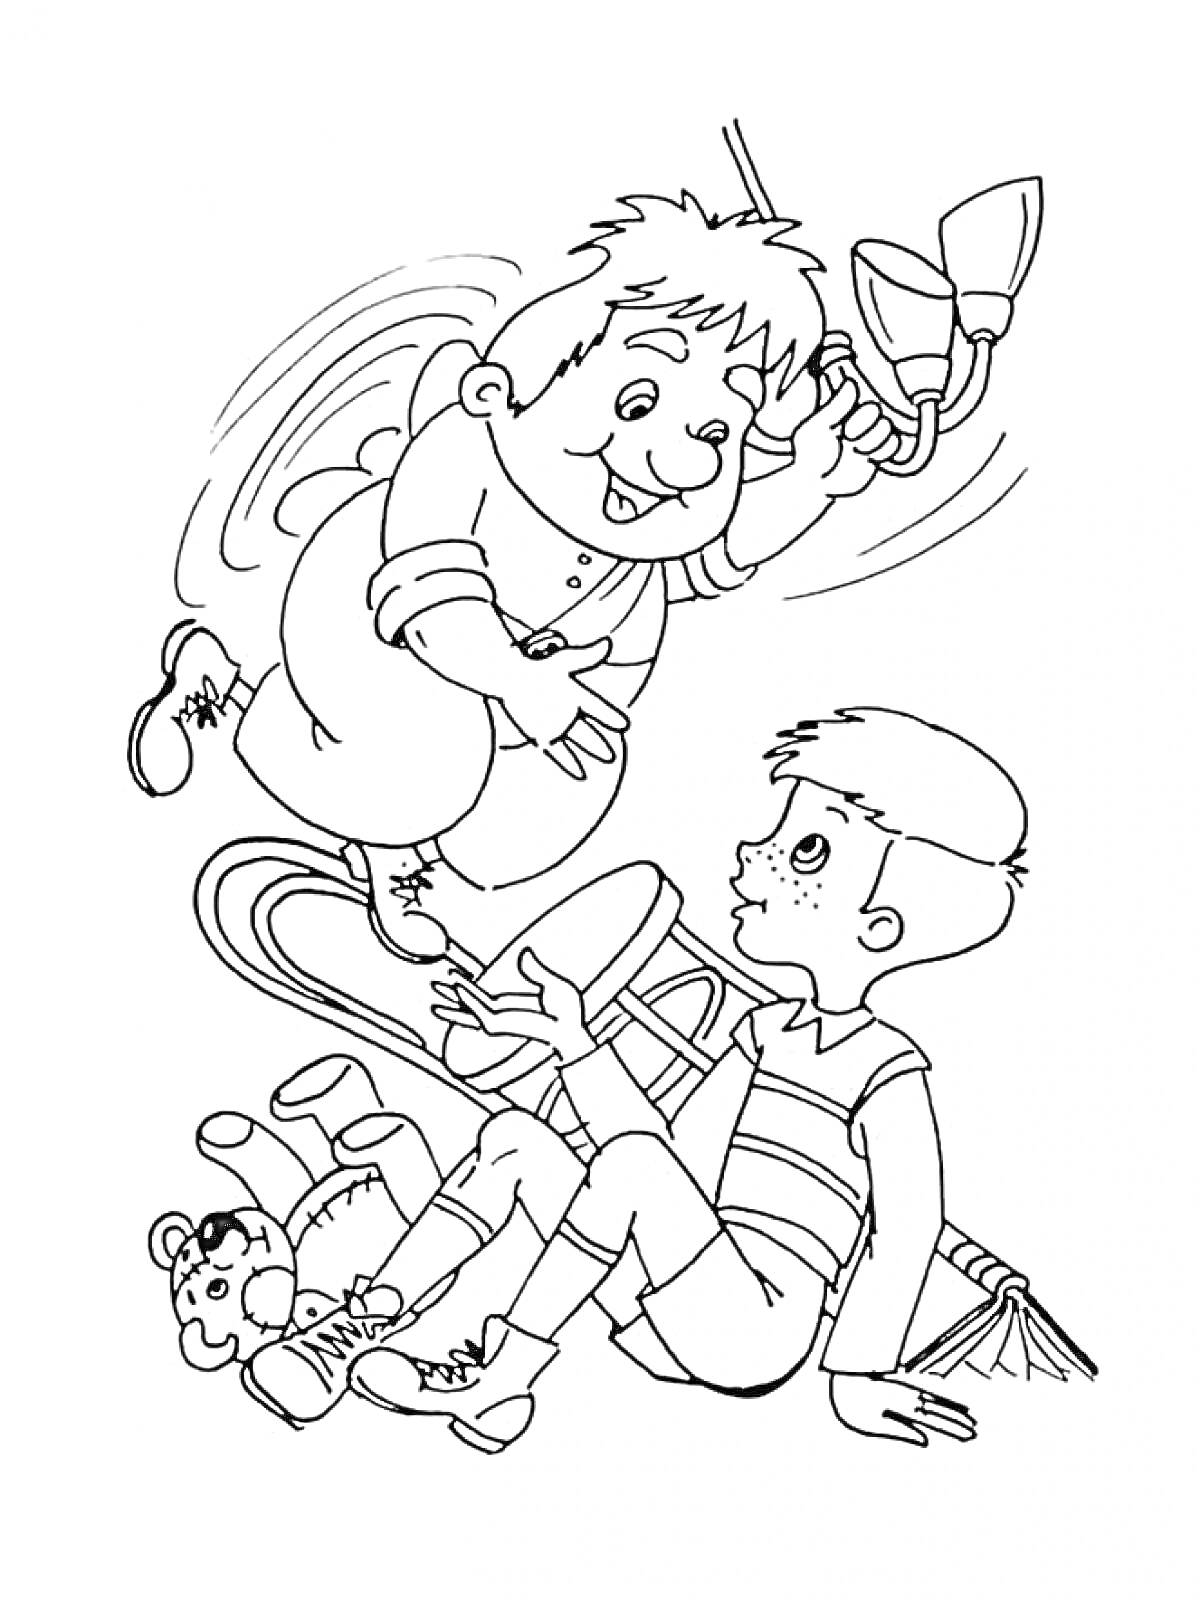 Карлсон с пропеллером и мальчик среди игрушек, книг и мебели